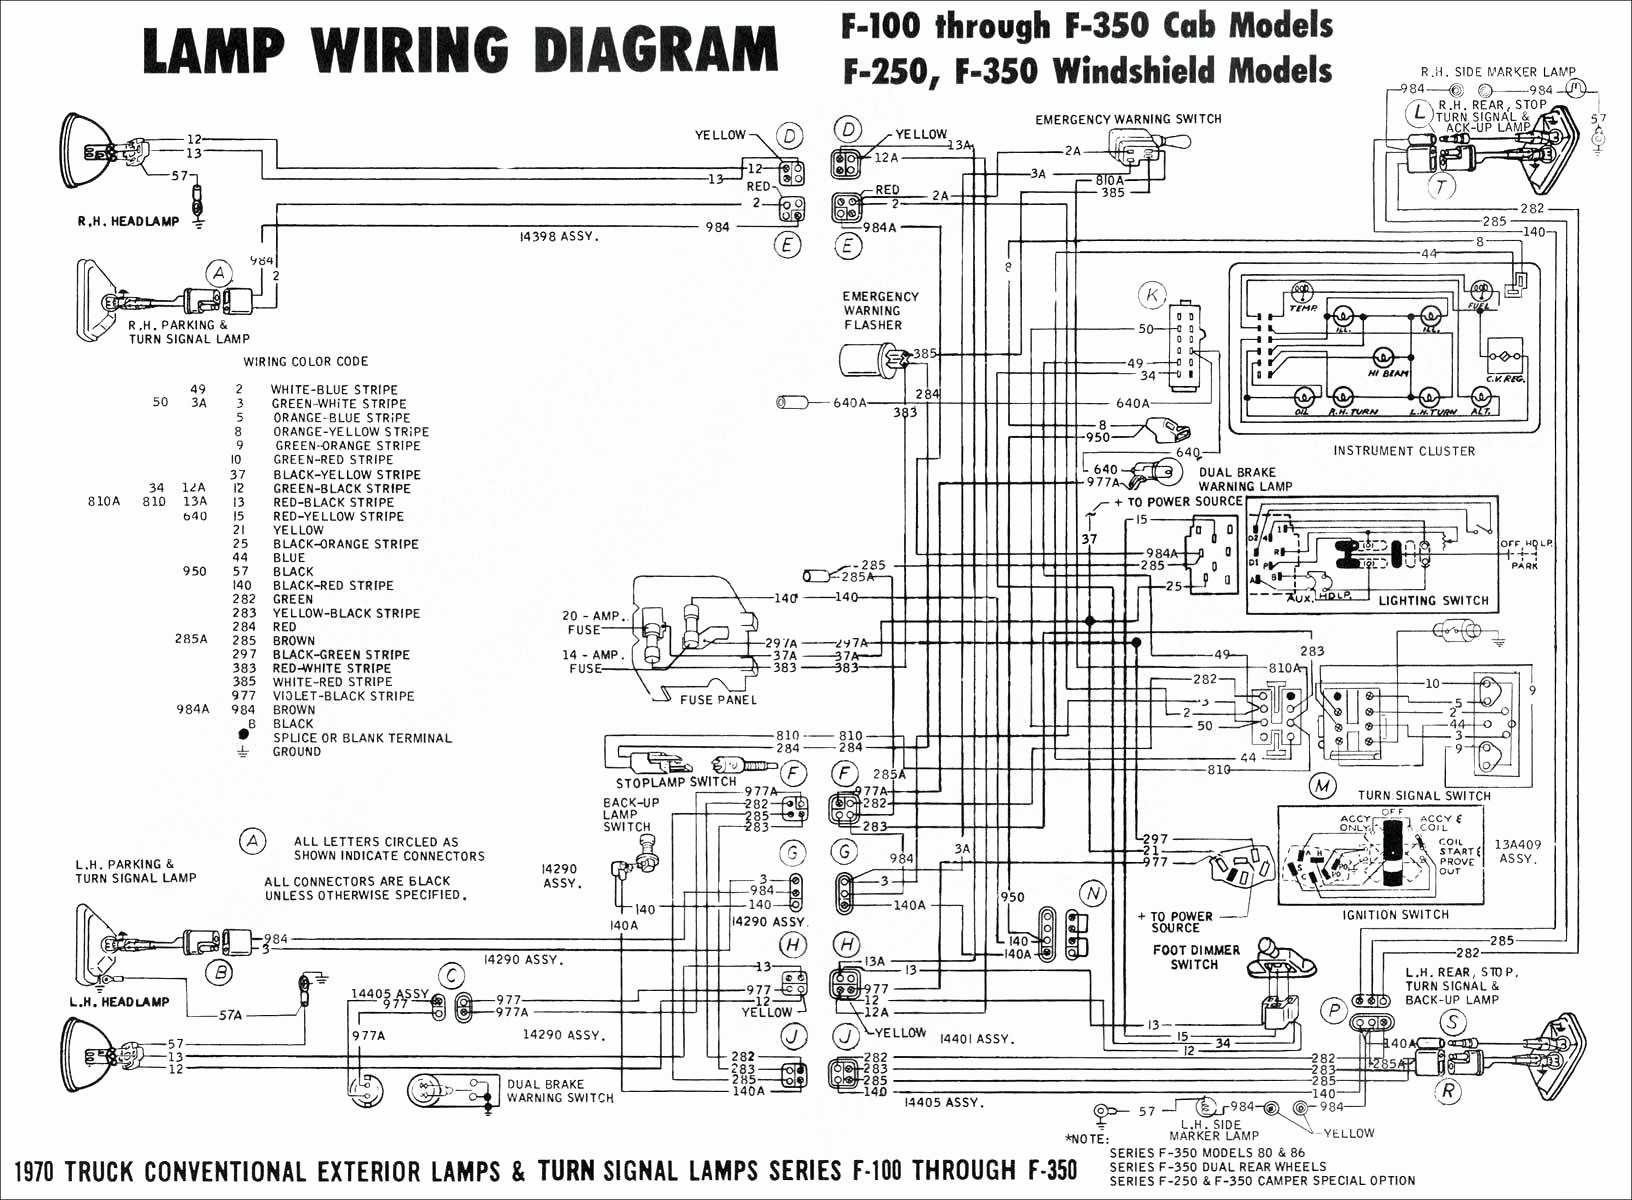 Universal Power Window Wiring Diagram 6b2 Basic Turn Signal Wiring Diagram Motorcycle